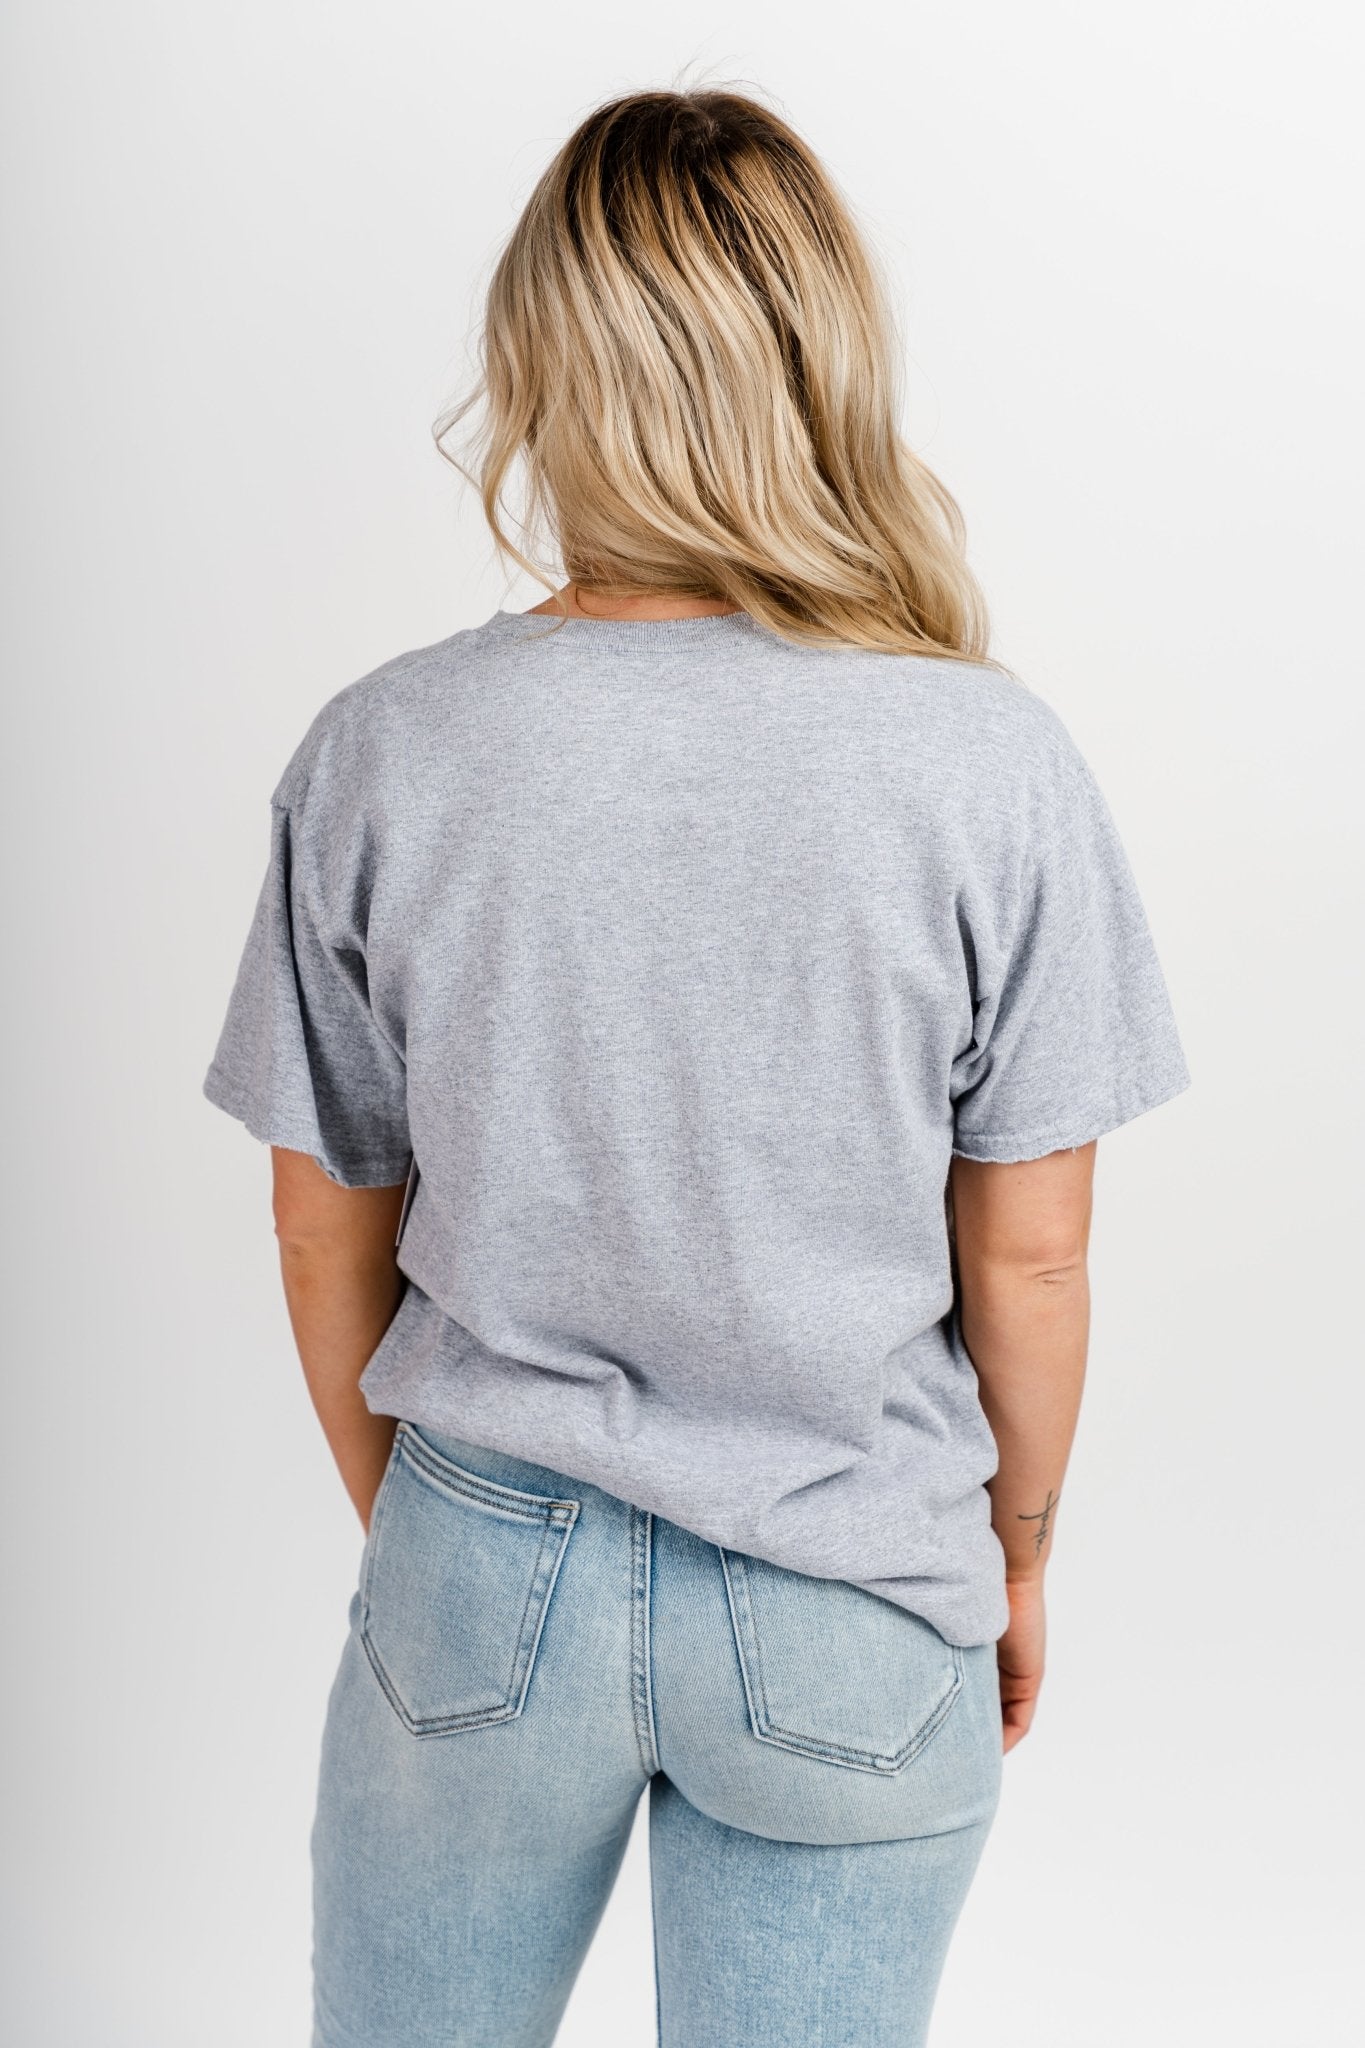 OKLA plaid arch thrifted t-shirt grey